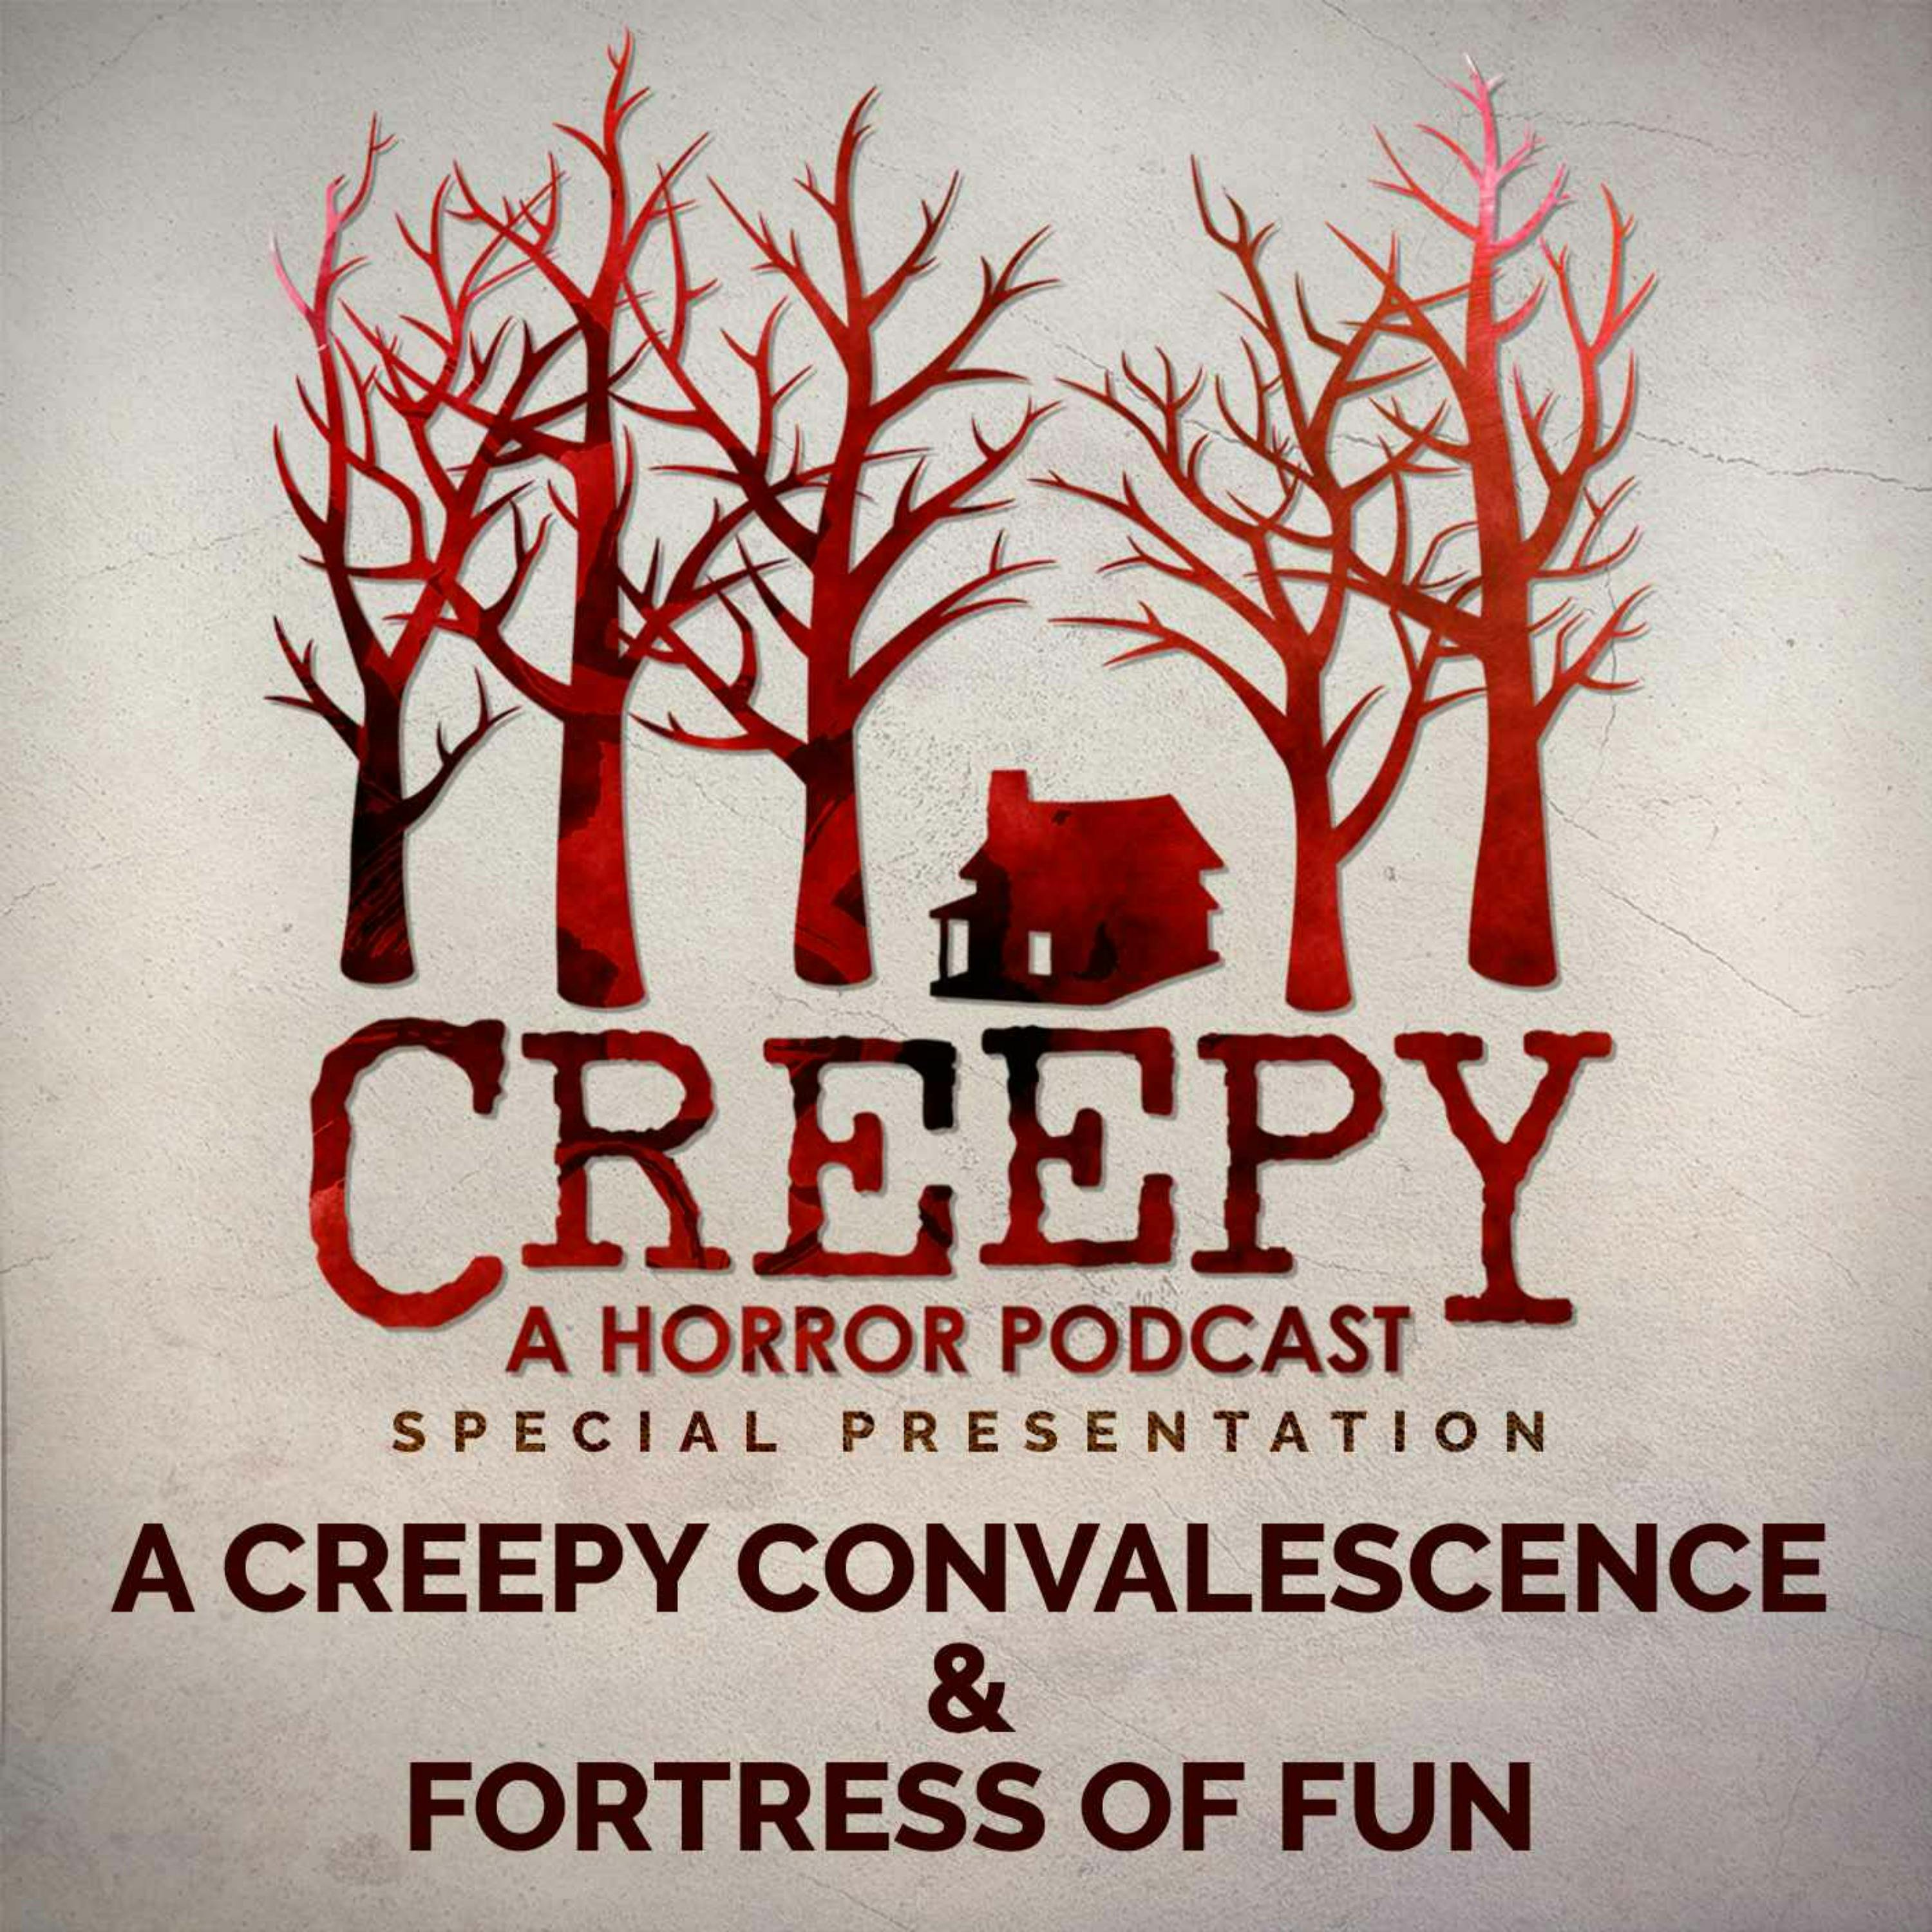 A Creepy Convalescence & Fortress of Fun